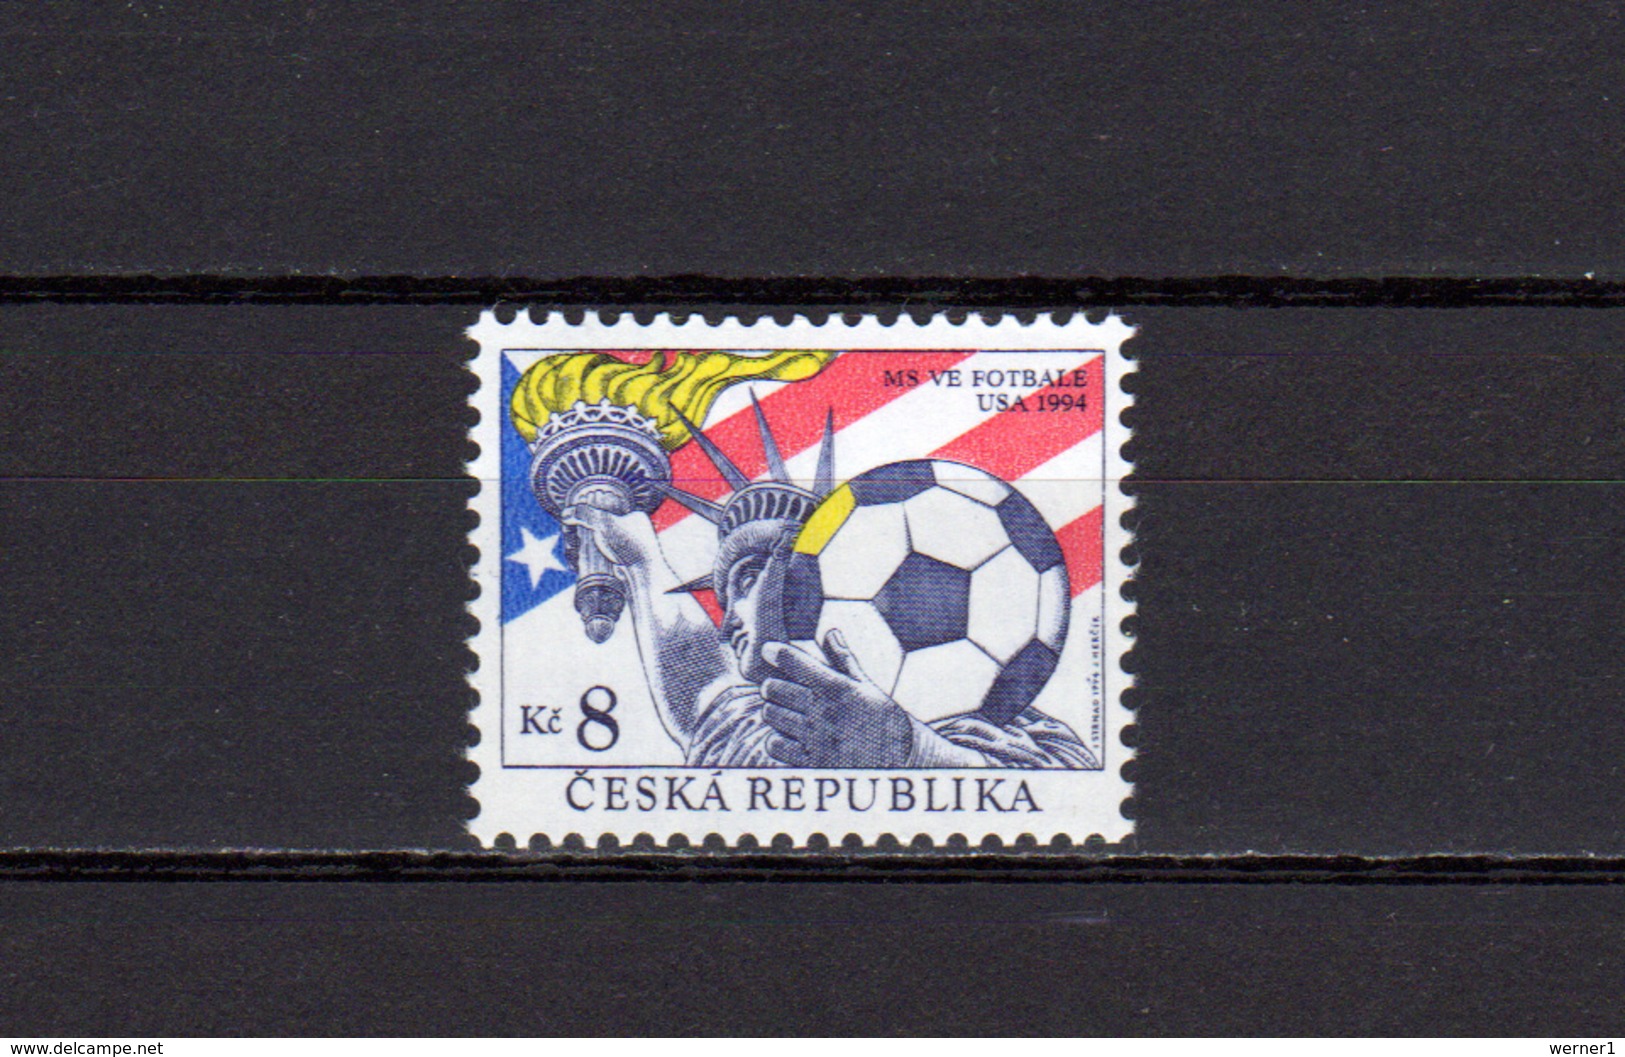 Czech Republic 1994 Football Soccer World Cup Stamp MNH - 1994 – USA